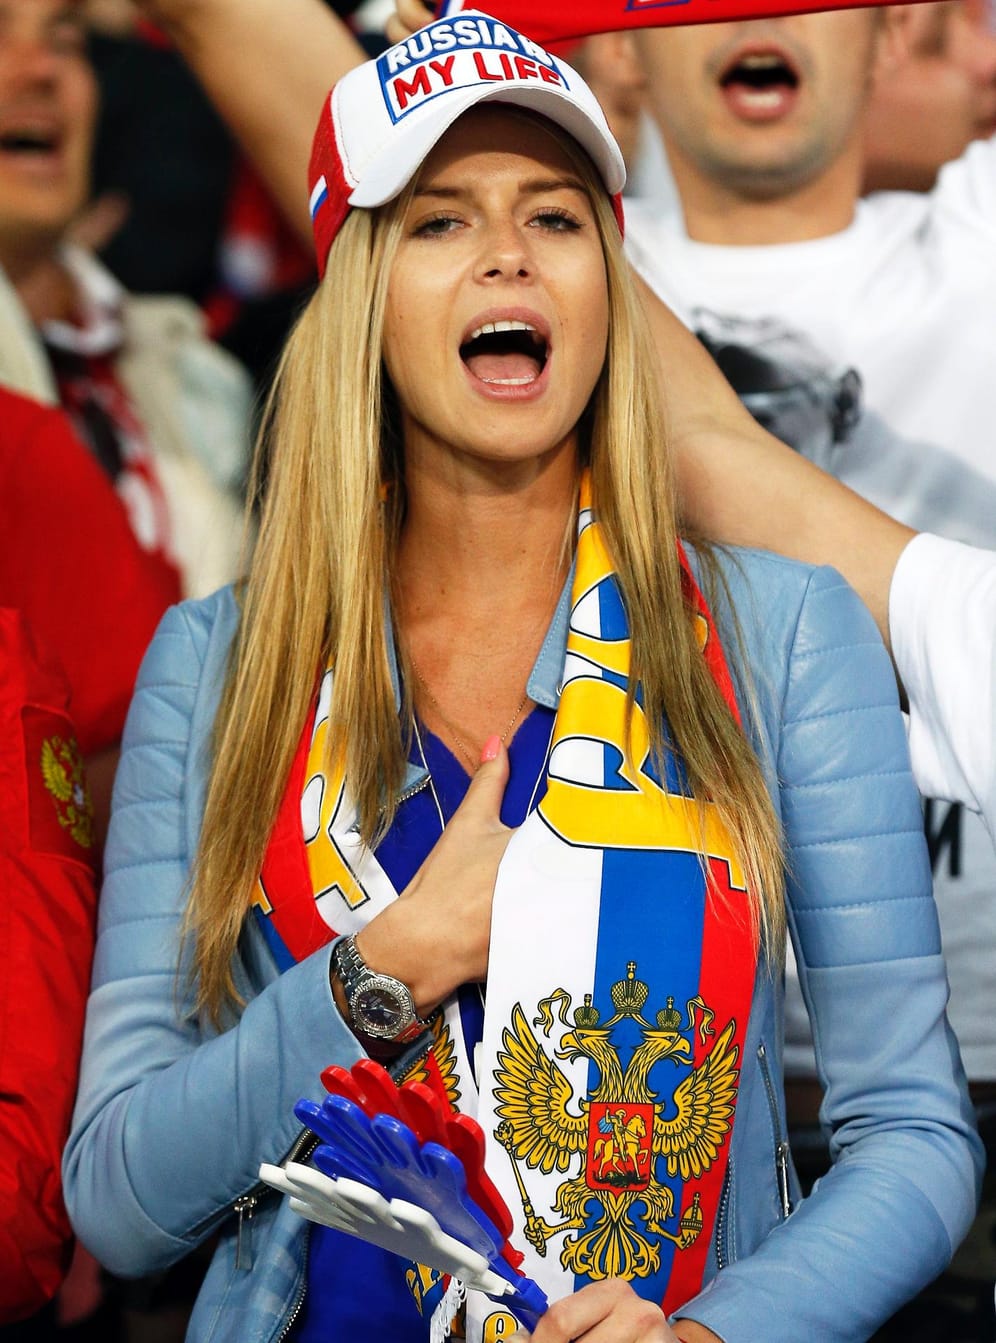 Leider verlor Russland das zweite Spiel gegen die Slowakei. An den Fans lag es sicher nicht.